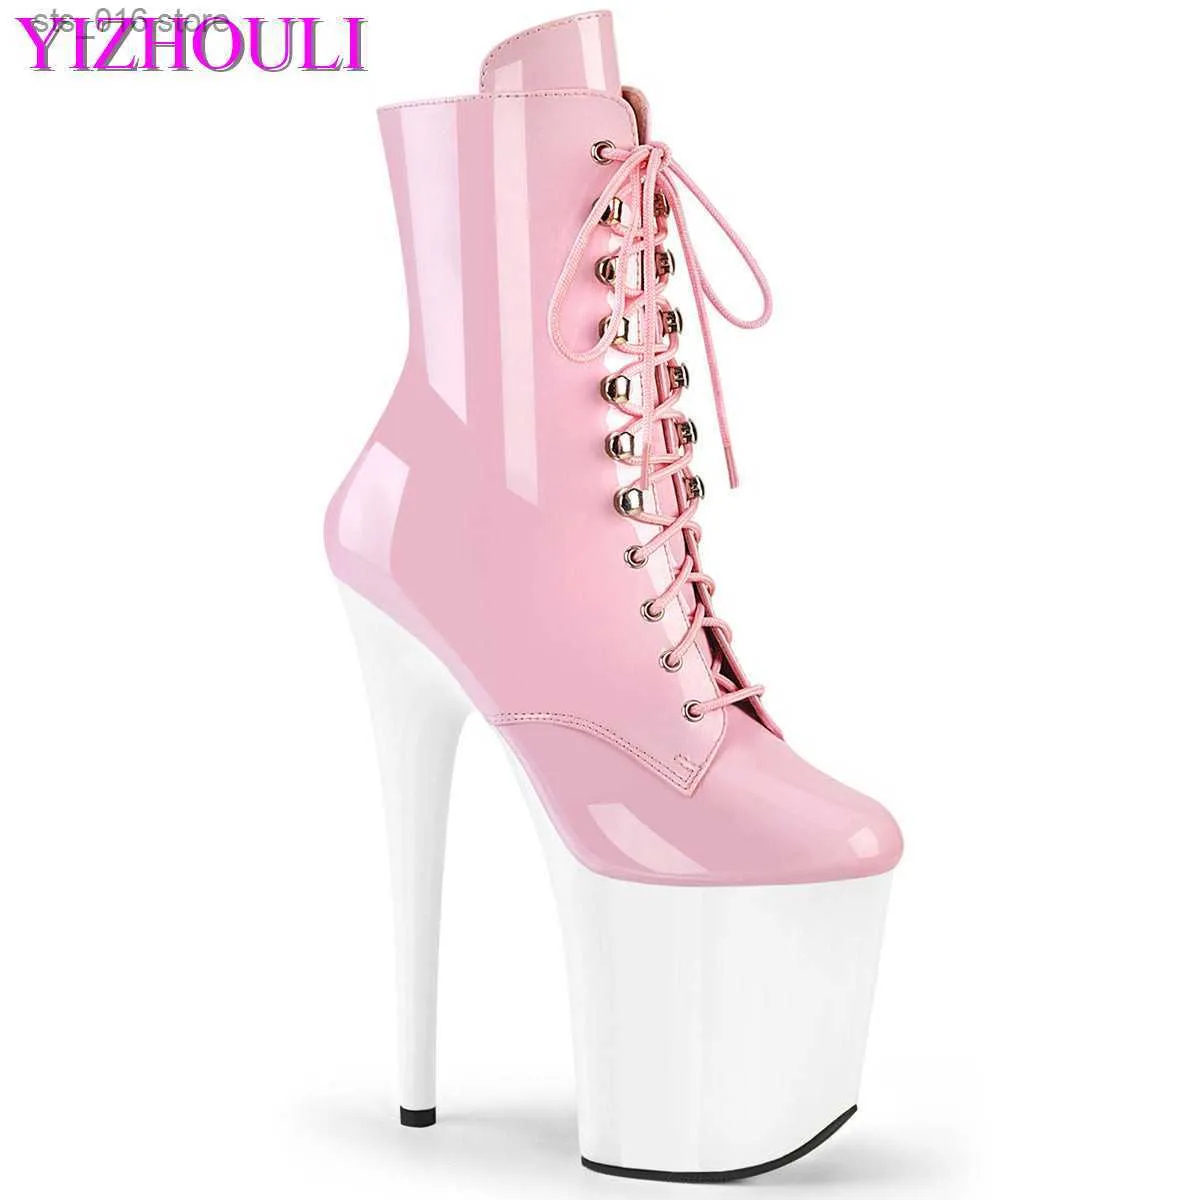 8 High Fashion Sexy Female Heel Inch Knight Platform enkel voor dames herfst winterschoenen 20-23 cm roze paal dansende laarzen T230824 731 T23024